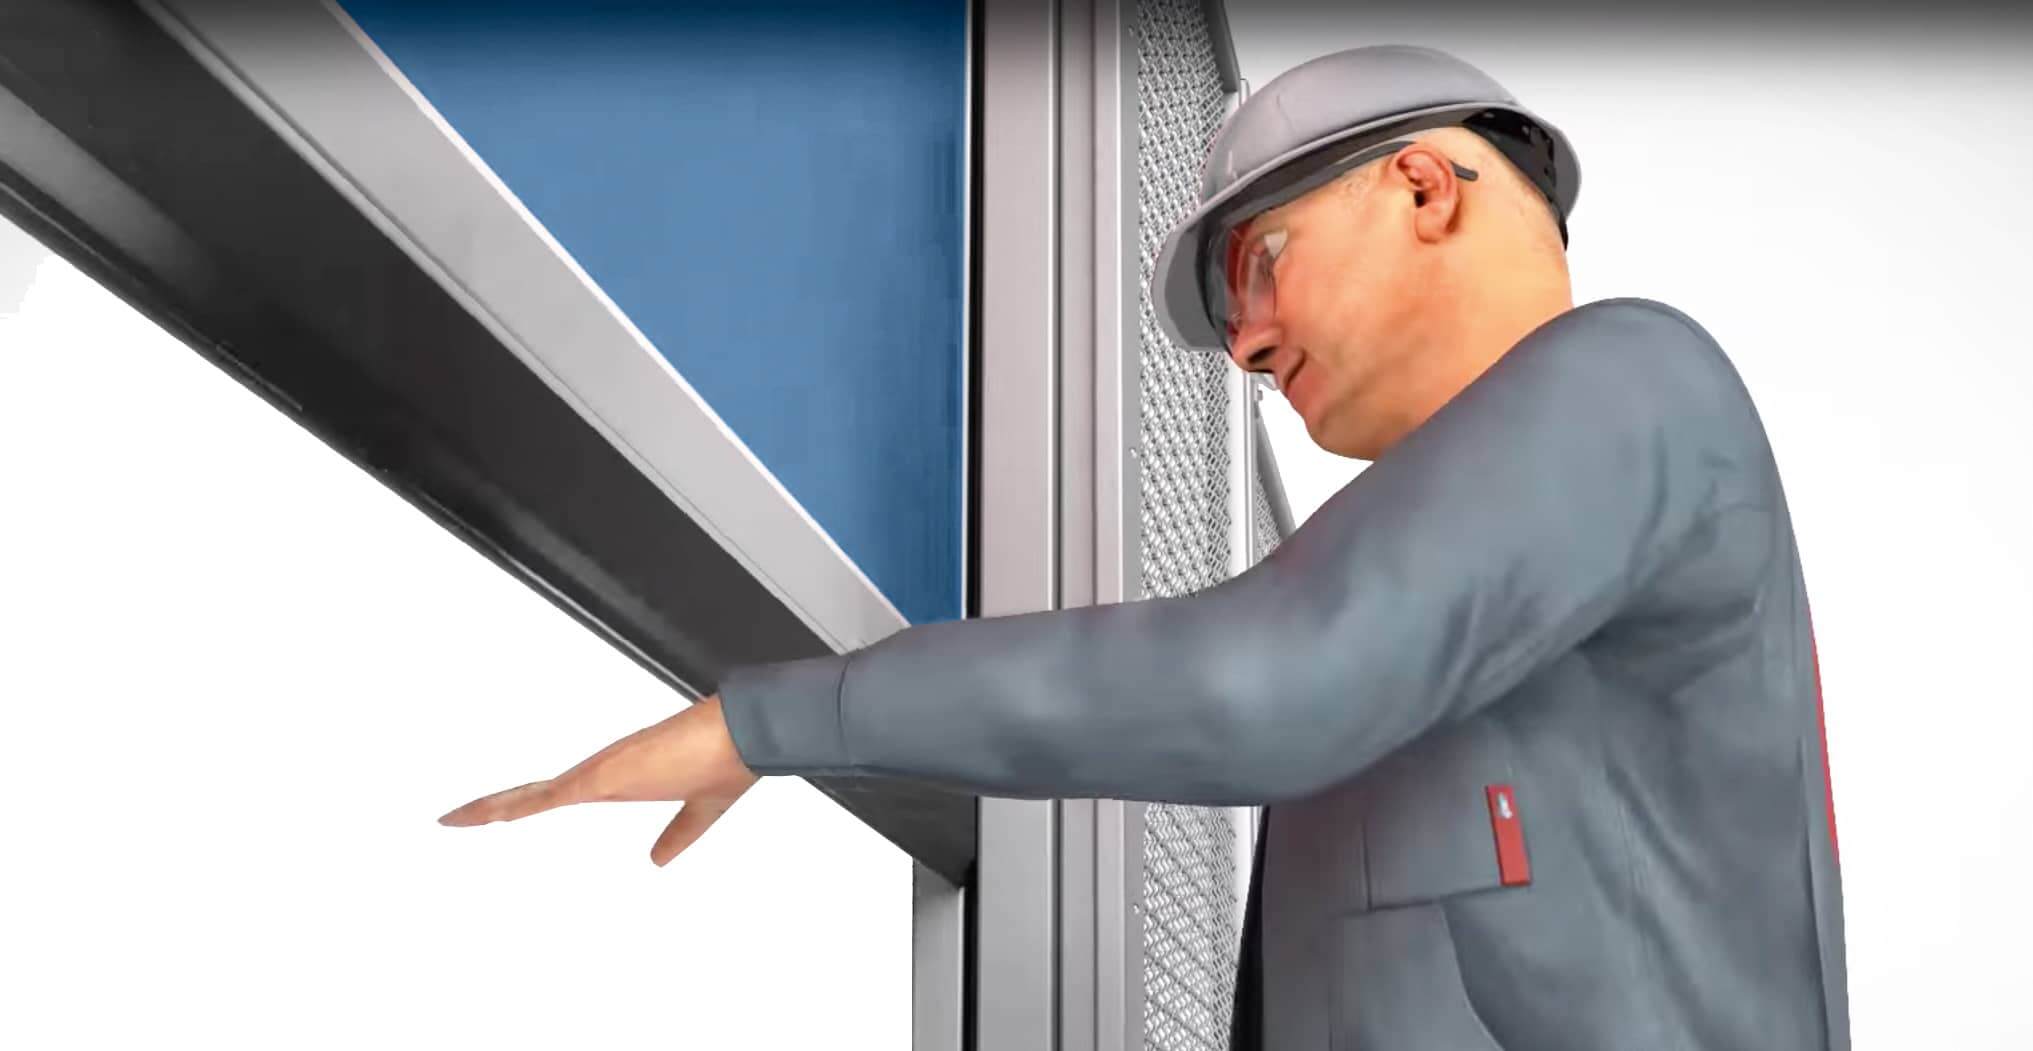 Worker holds hand under security door